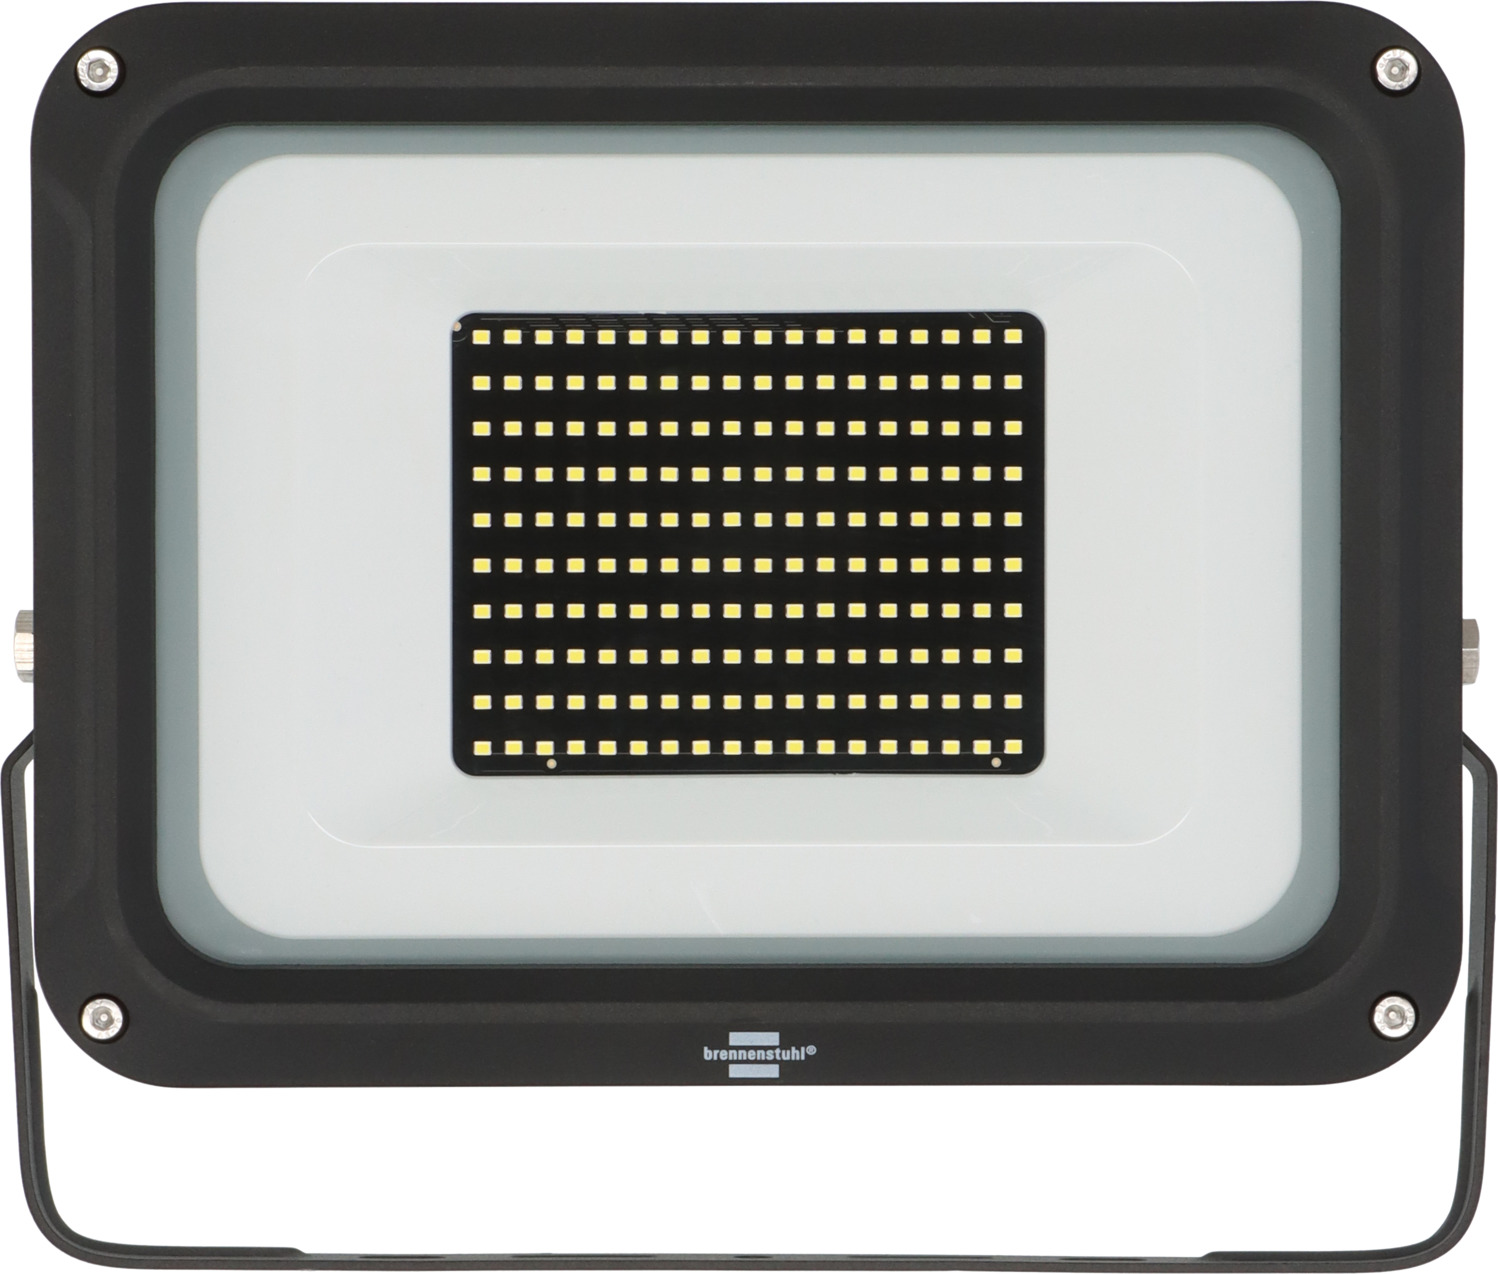 LED Strahler JARO 14060, 11500lm, 100W, IP65 | brennenstuhl®